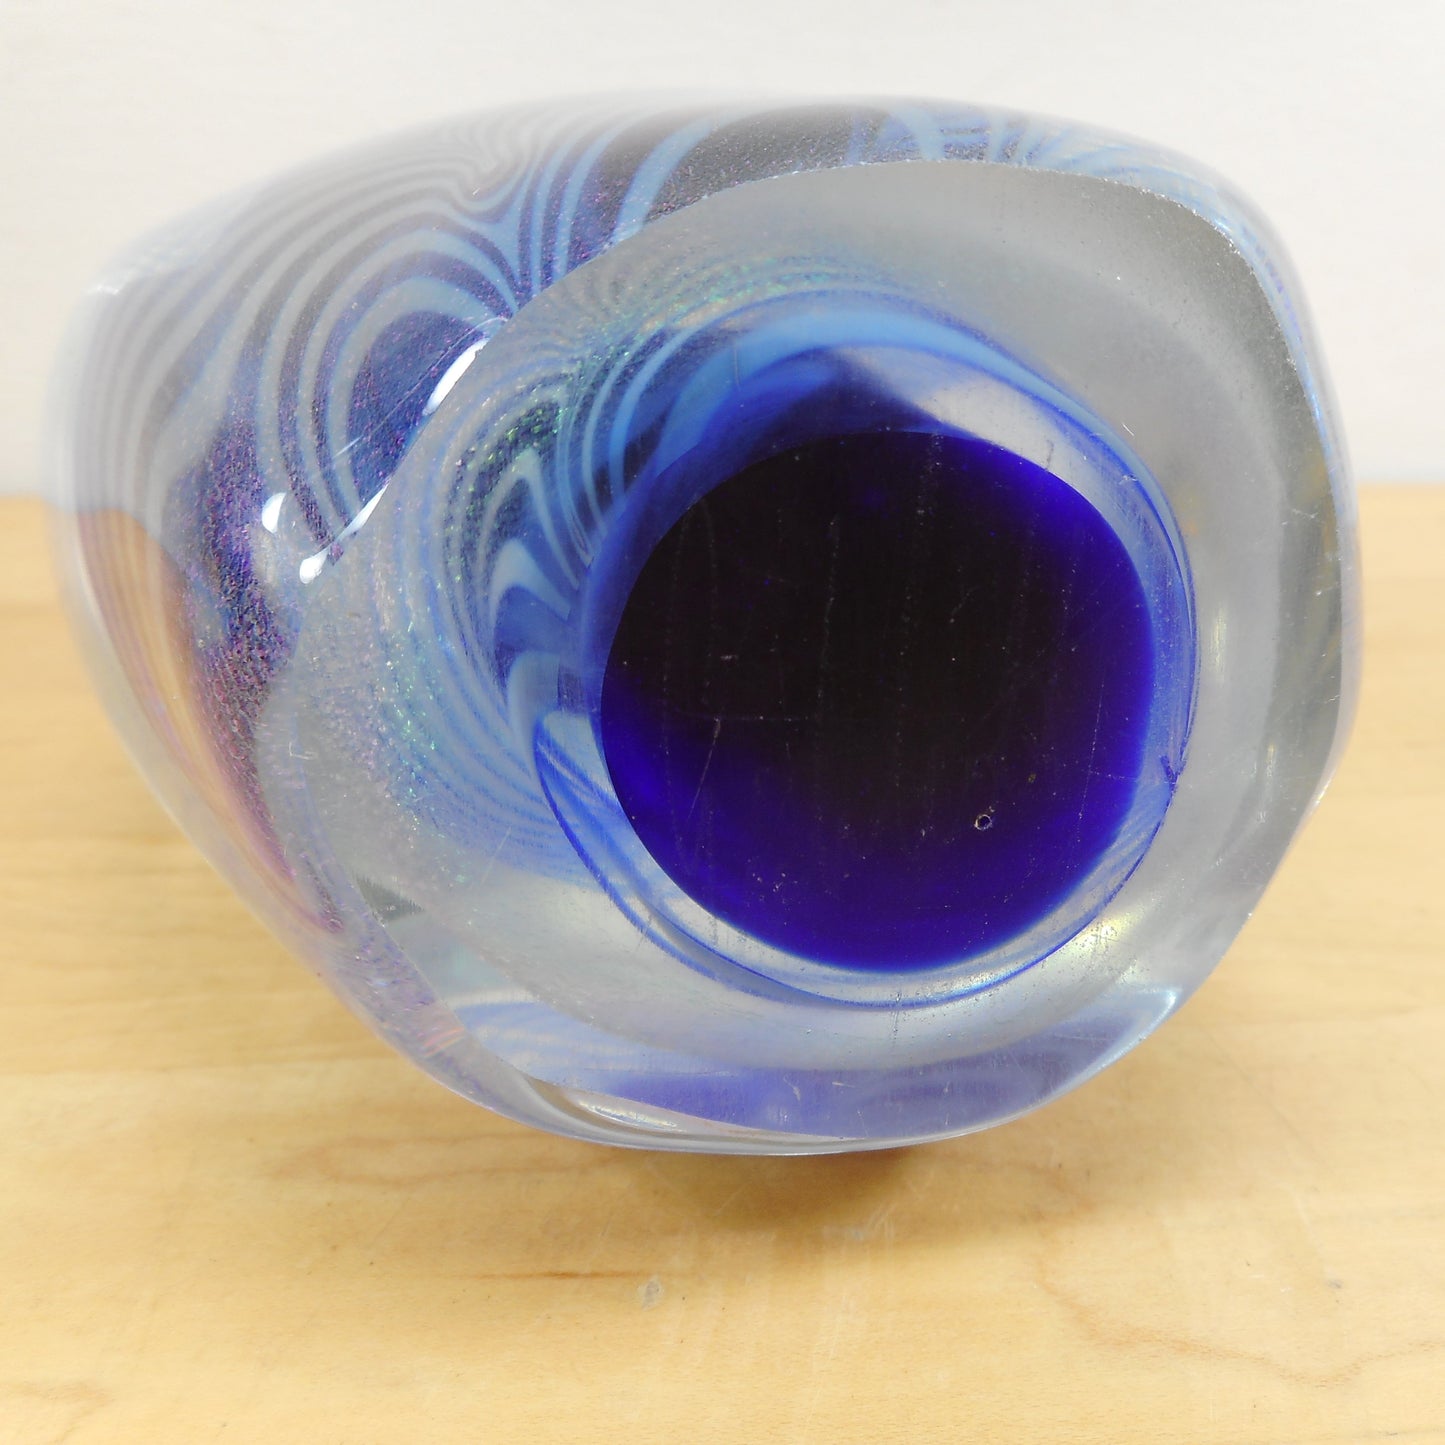 Robert Eickholt Signed 1983 Iridescent Art Glass Paperweight - Large 6" USA